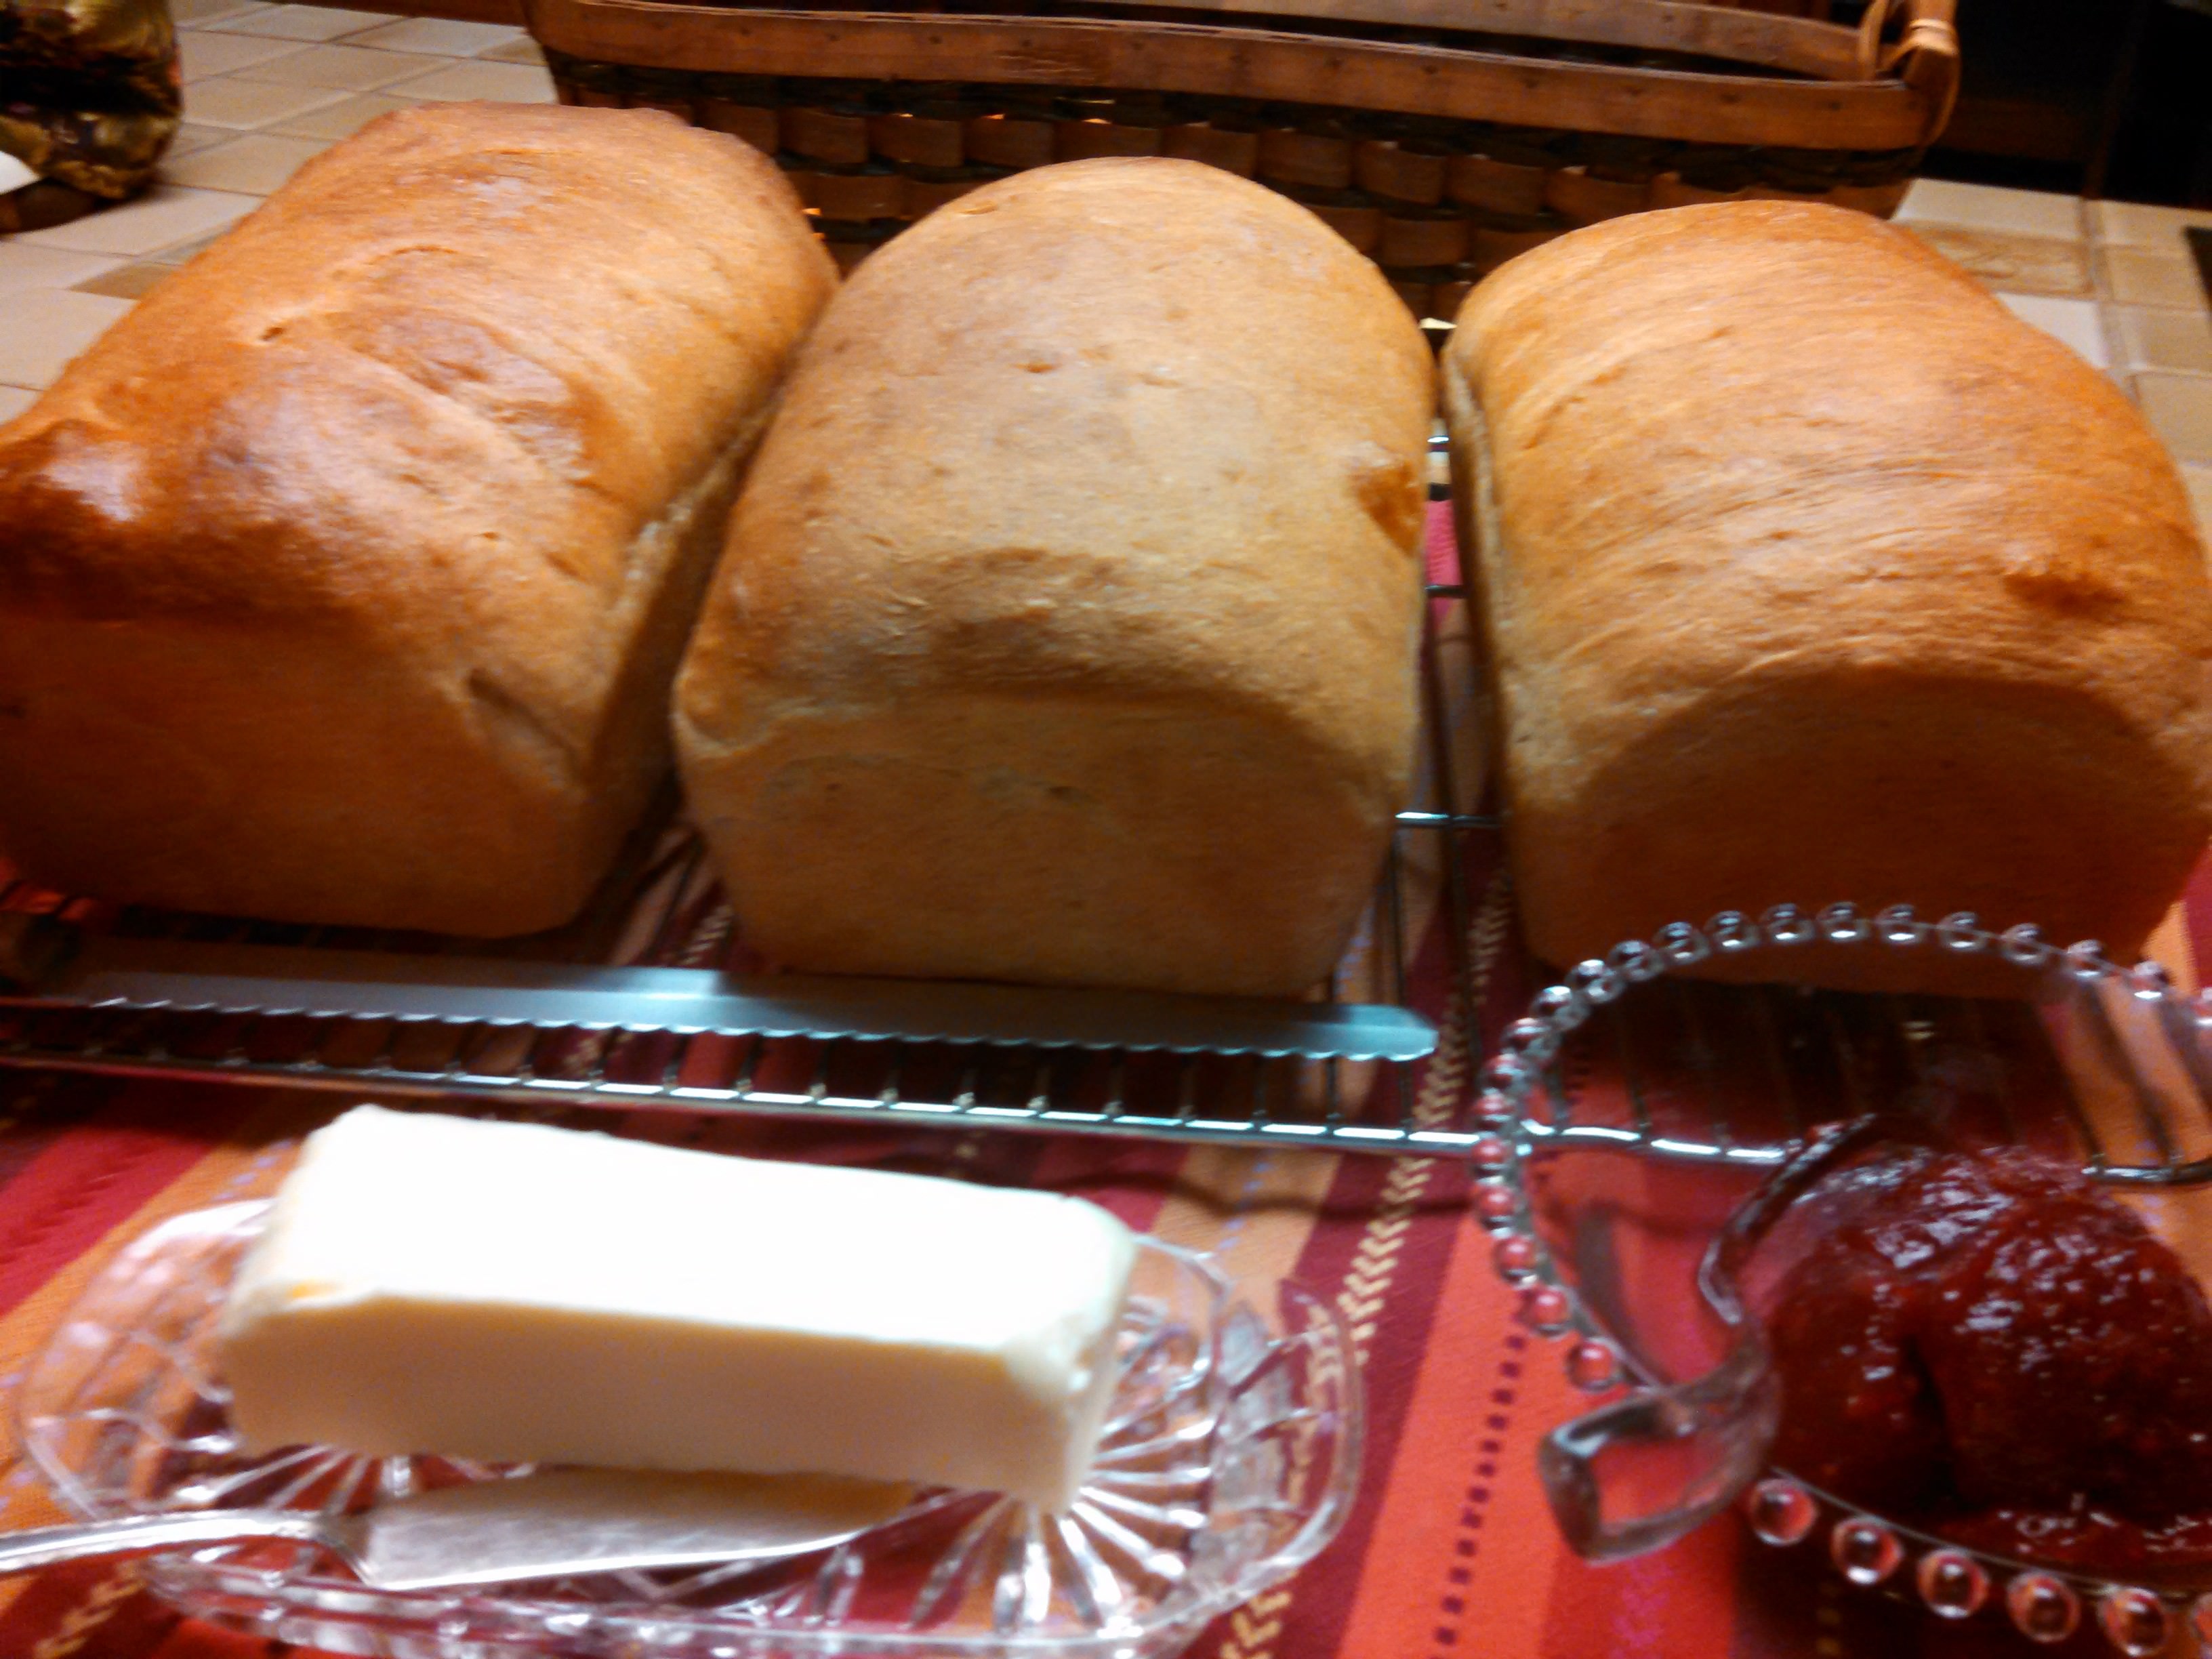 Baked Honey Whole Wheat Bread